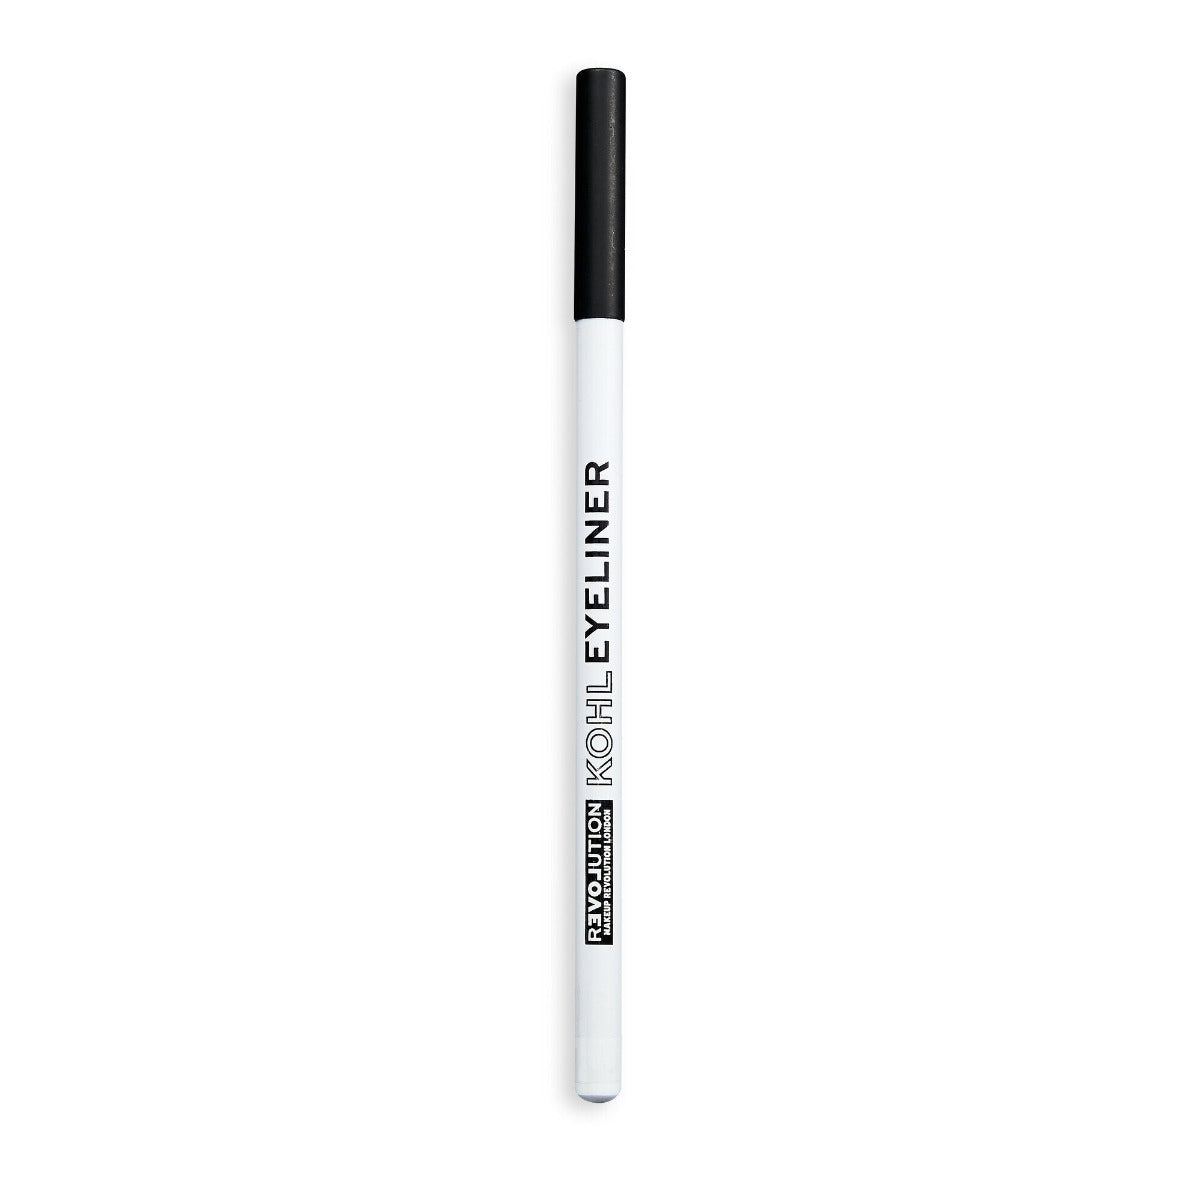 Makeup Revolution Kohl Eyeliner (1.3g) - White